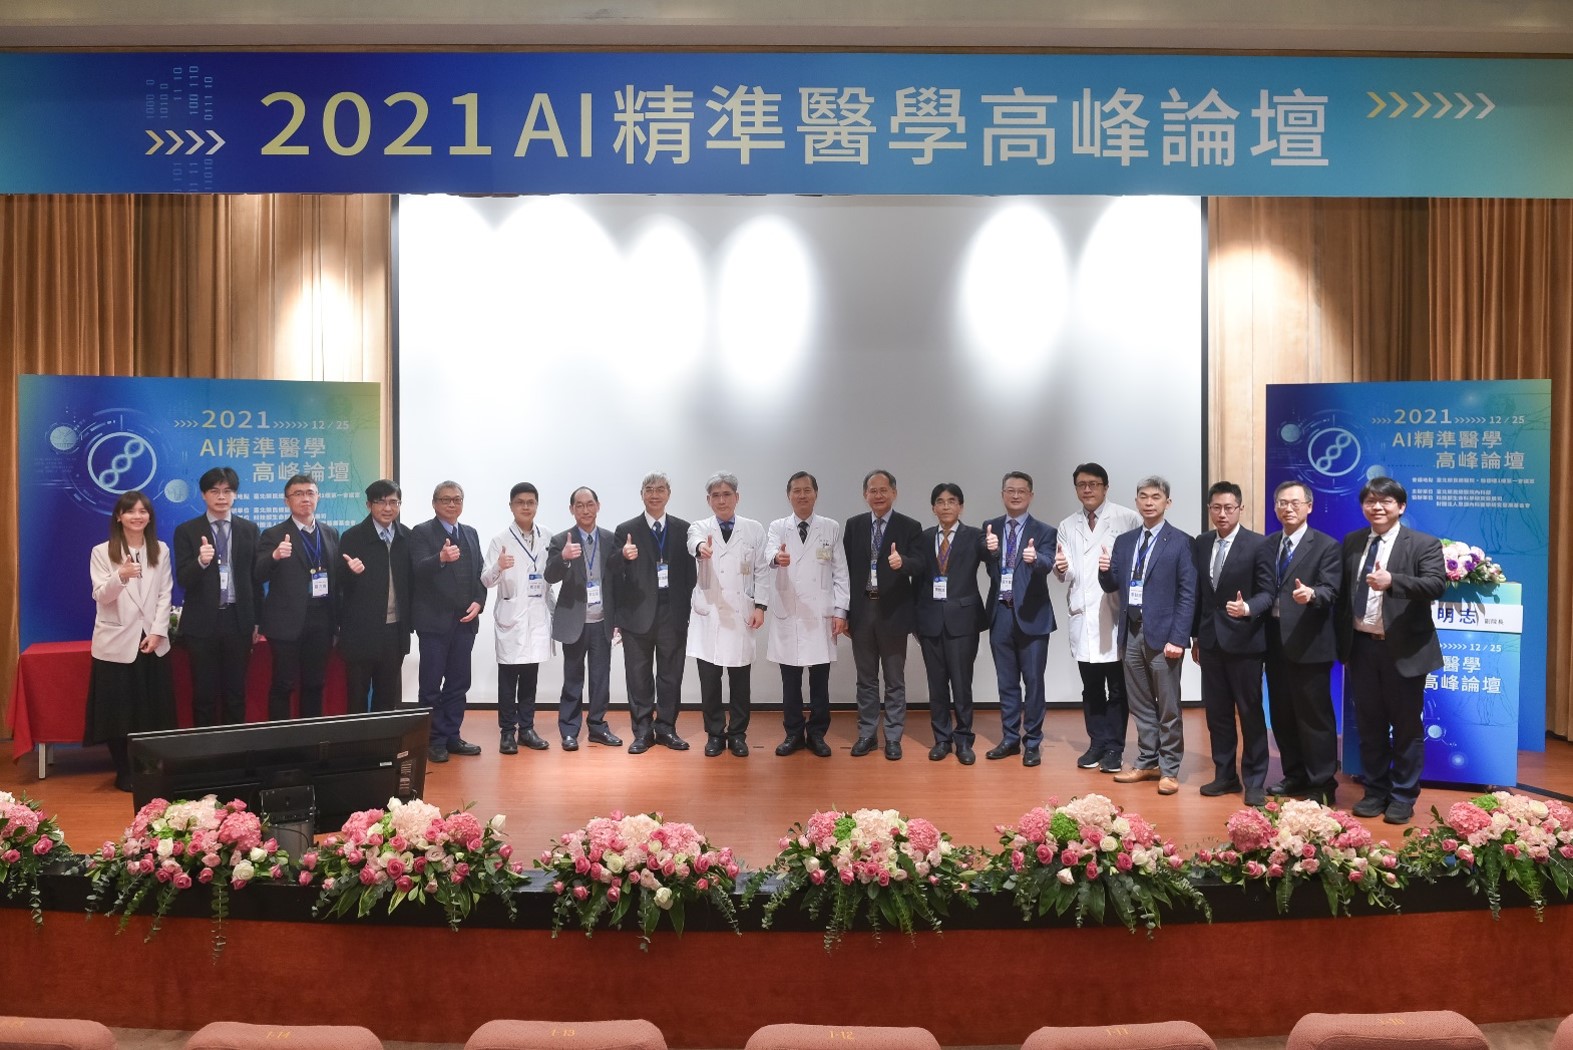 2021 AI精準醫學高峰論壇��